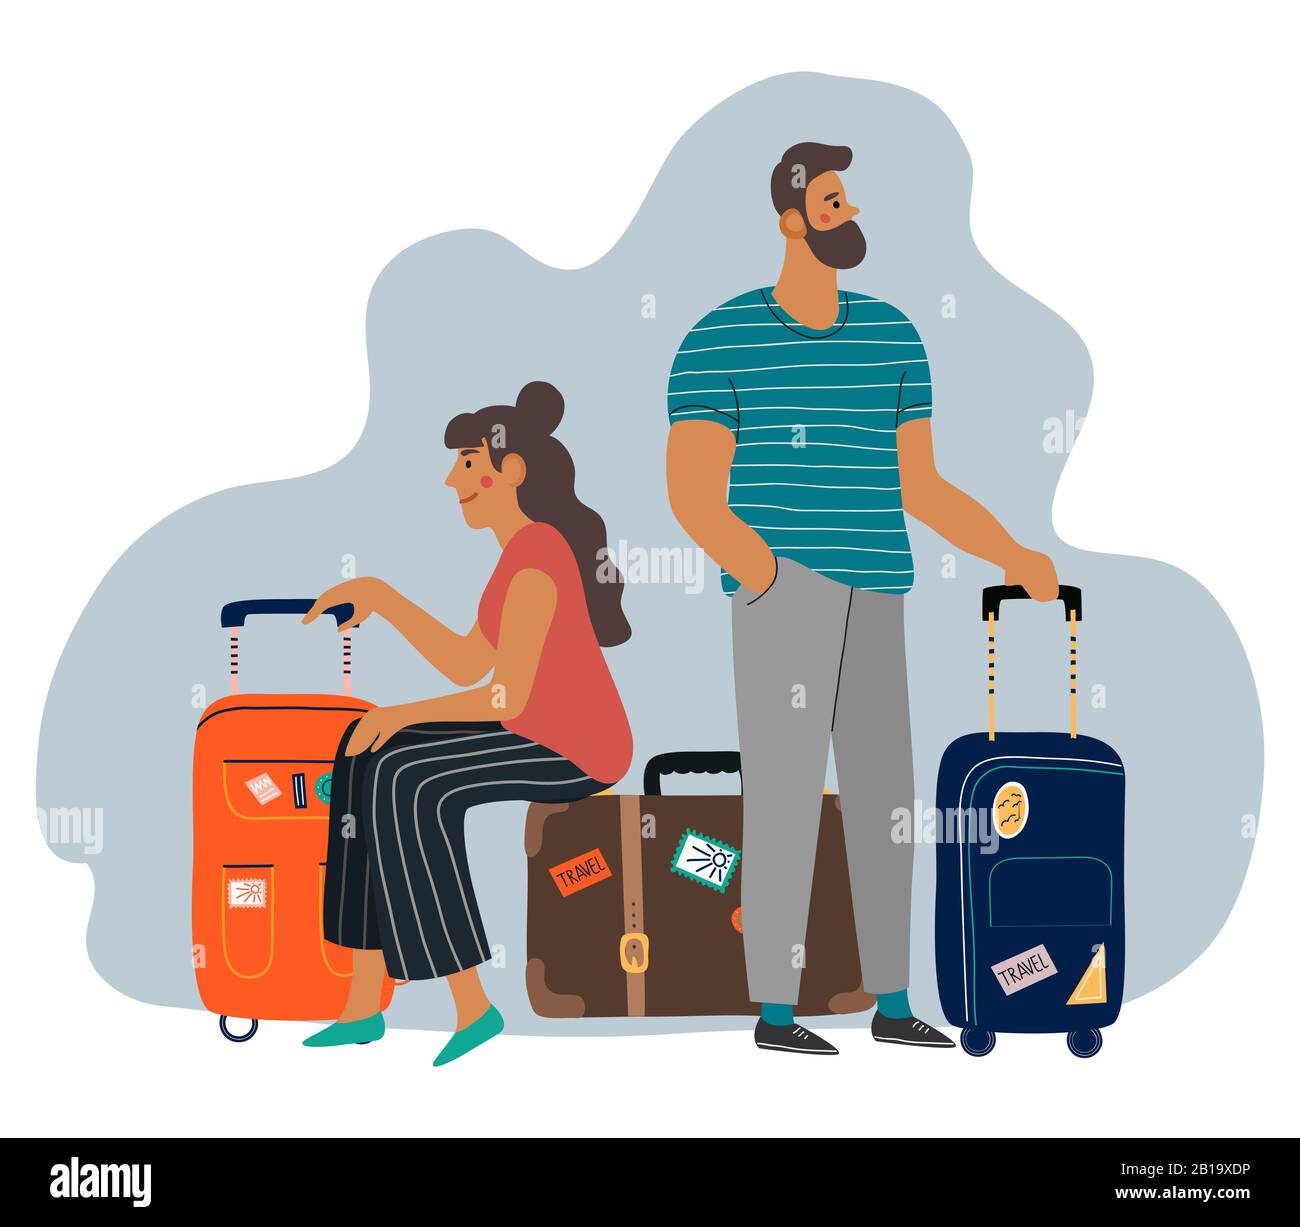 Ein wartender Mann und eine Frau mit Koffern. Cartoon flacher Vektor Stock Vektor